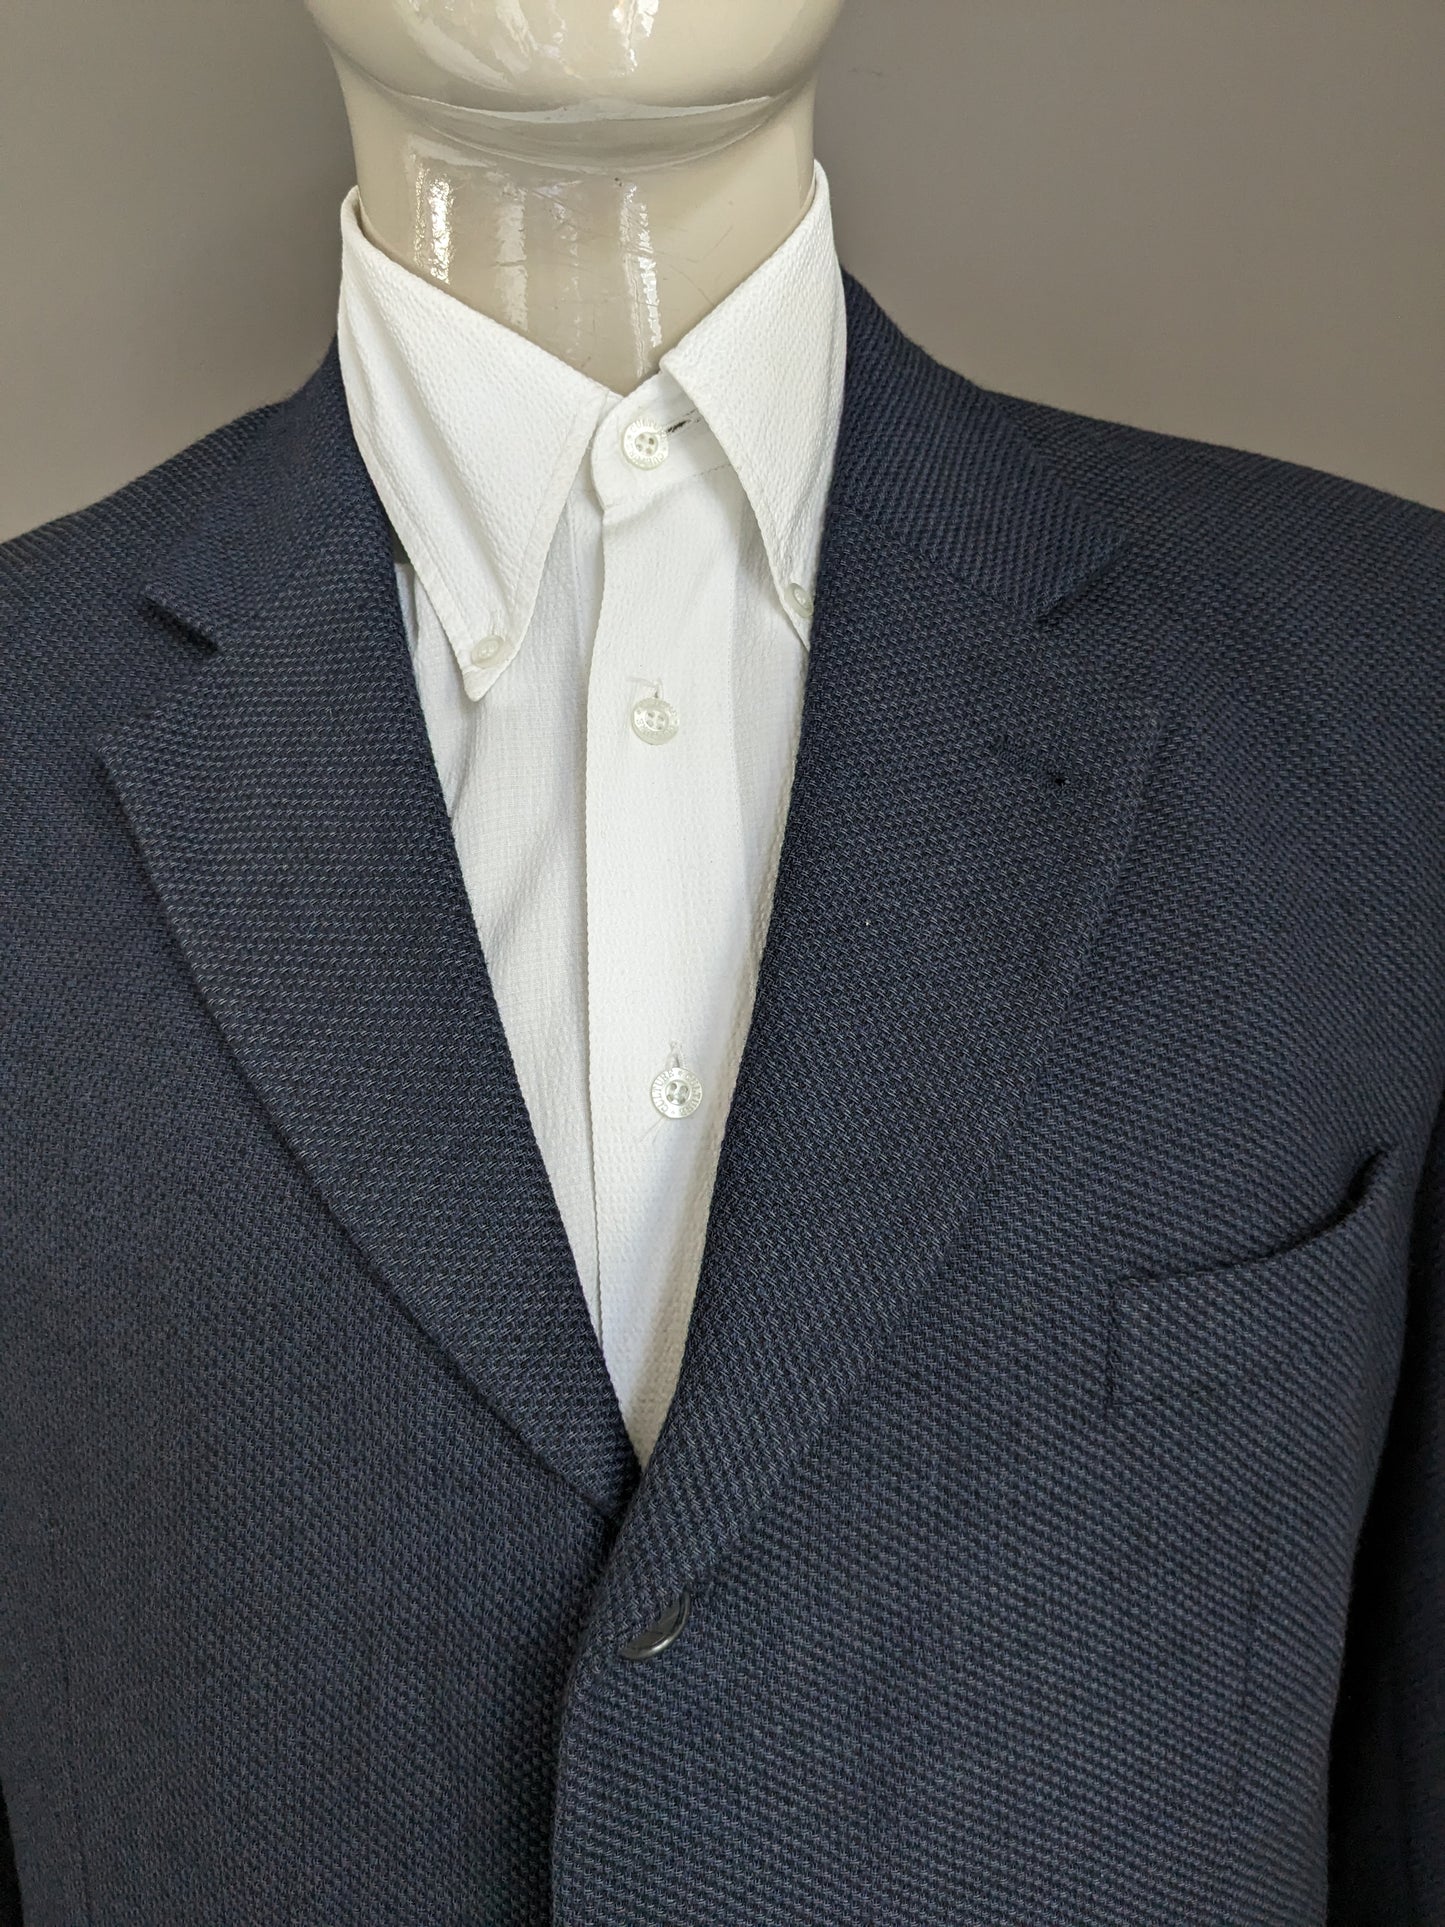 Veste en laine Kreymborg vintage. Bleu noir mélangé. Taille 27 (54 / L).